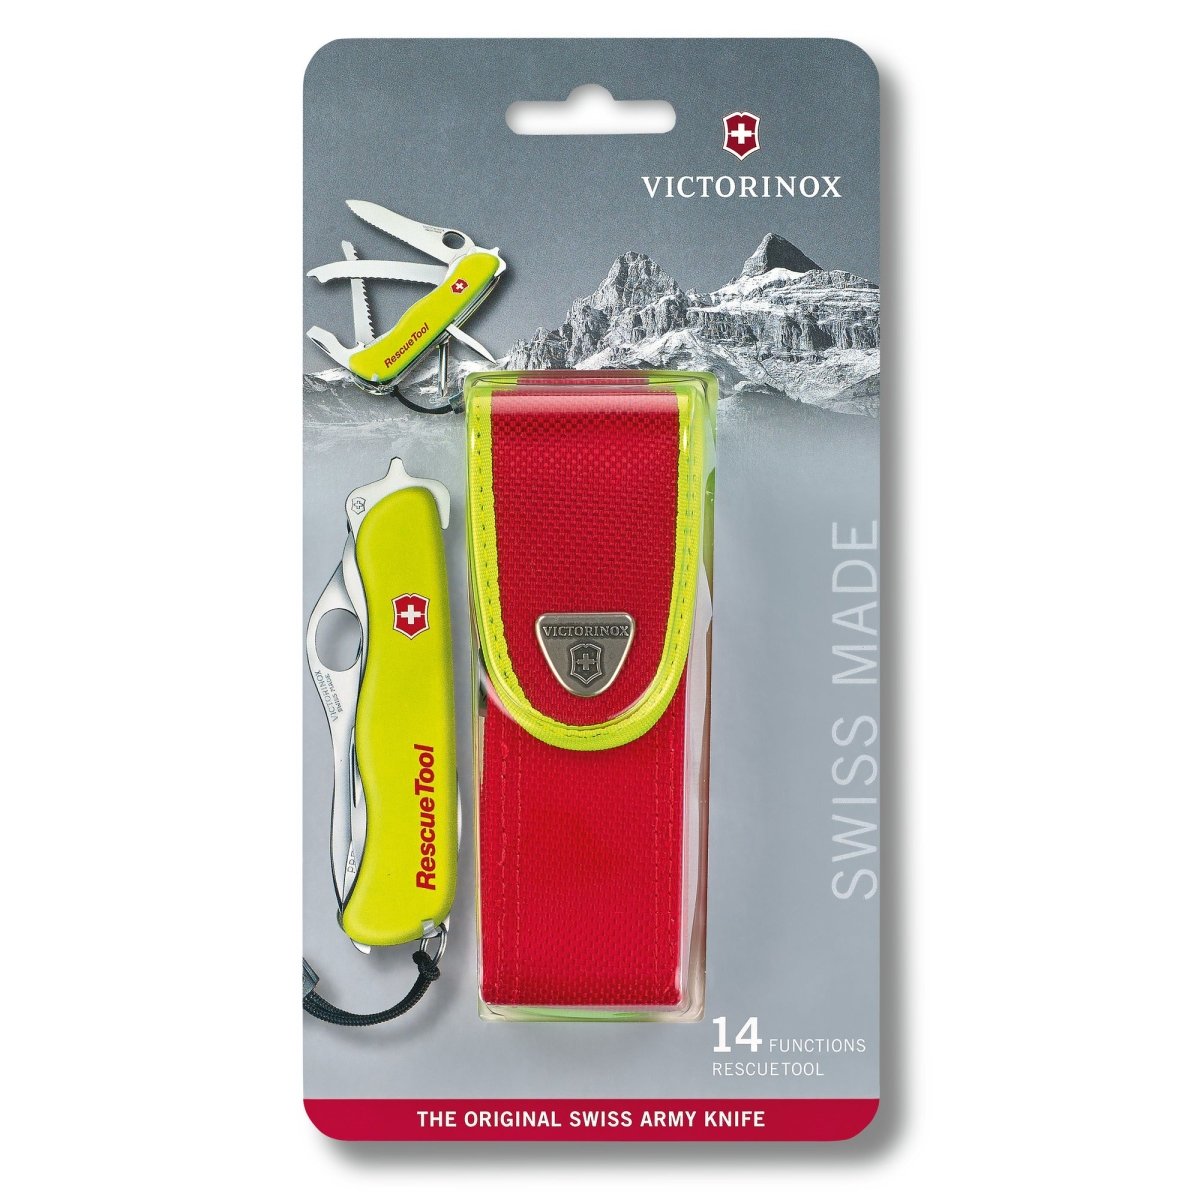 Taschenmesser Rescue Tool mit Nylon-Etui - BERUFSMESSER.de